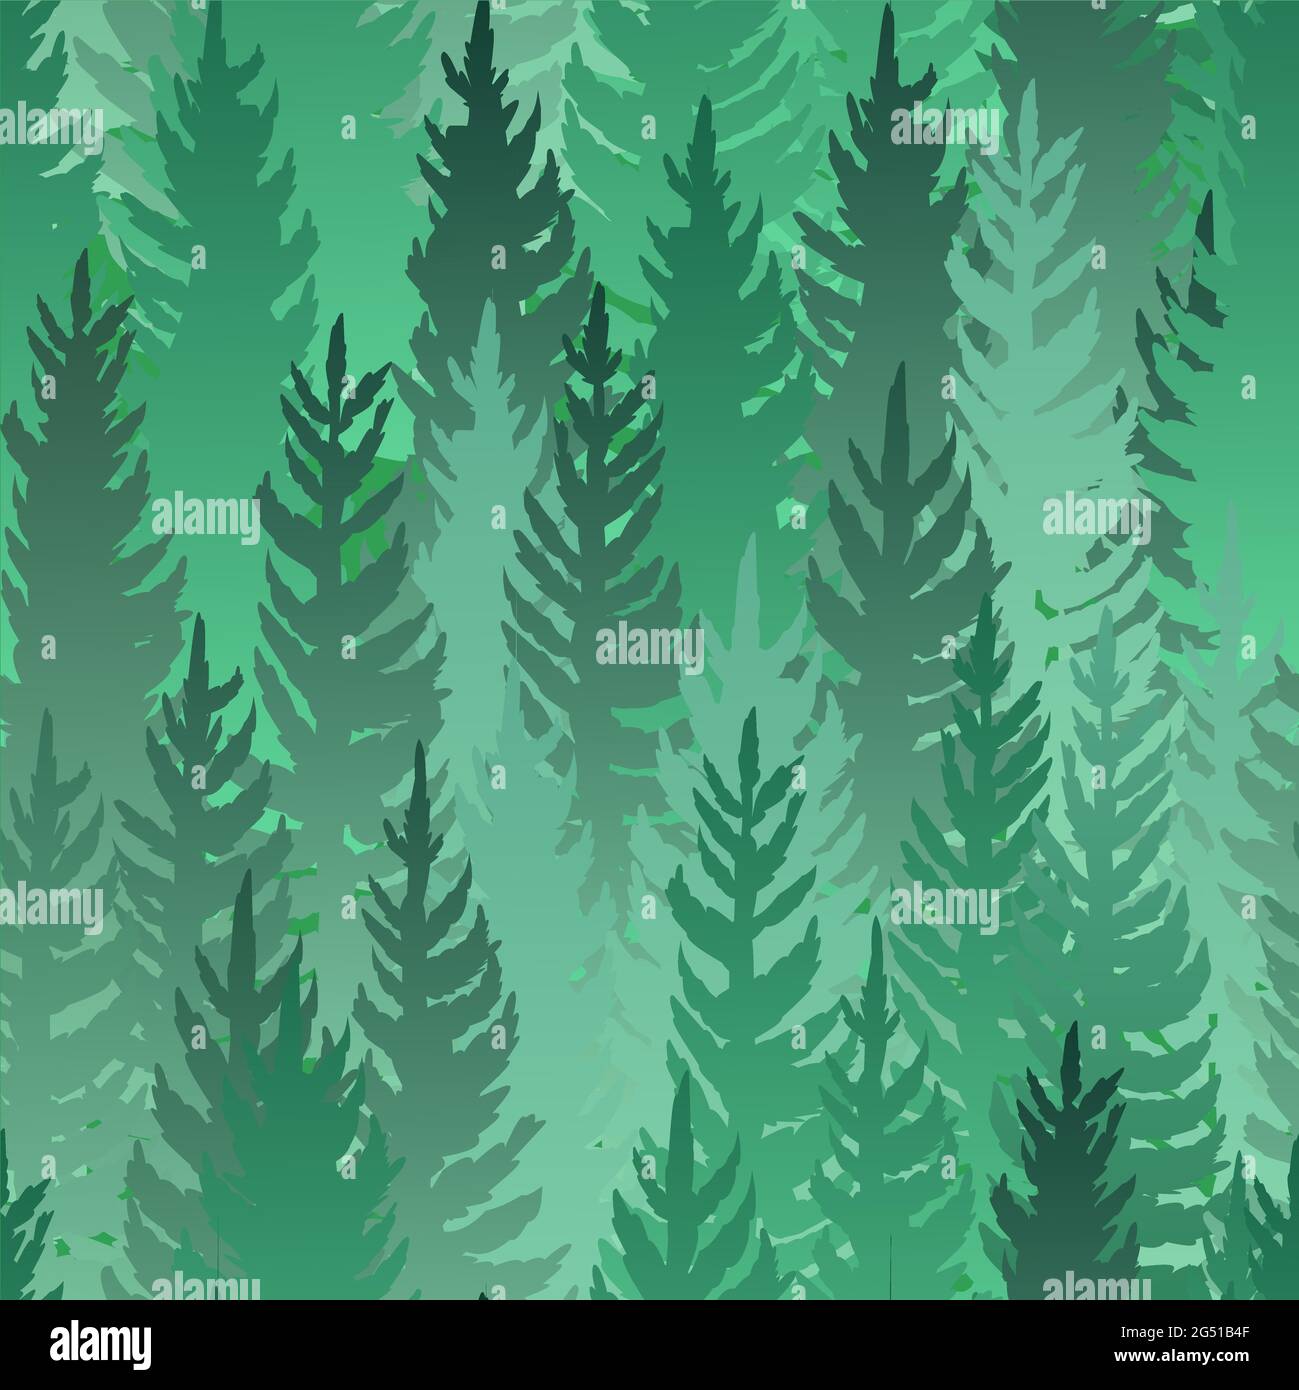 Wald Silhouette Szene. Nahtloses Muster. Landschaft mit Nadelbäumen. Wunderschöne Aussicht. Kiefern- und Fichtenbäume. Dunkle Natur. Illustrationsvektor Stock Vektor